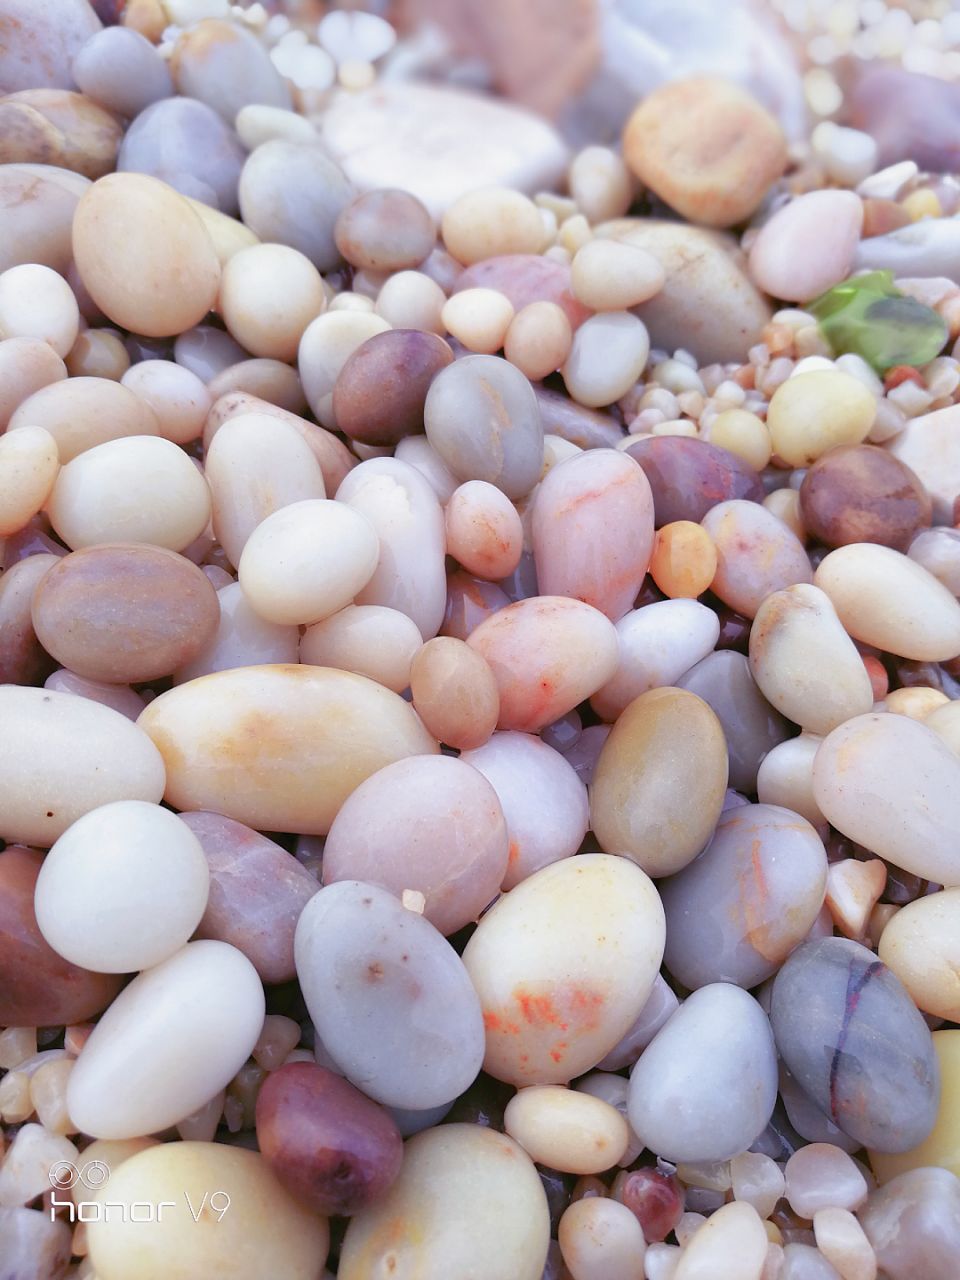 球石海滩果然不是虚传,圆圆的小石头真的是很多,很漂亮.